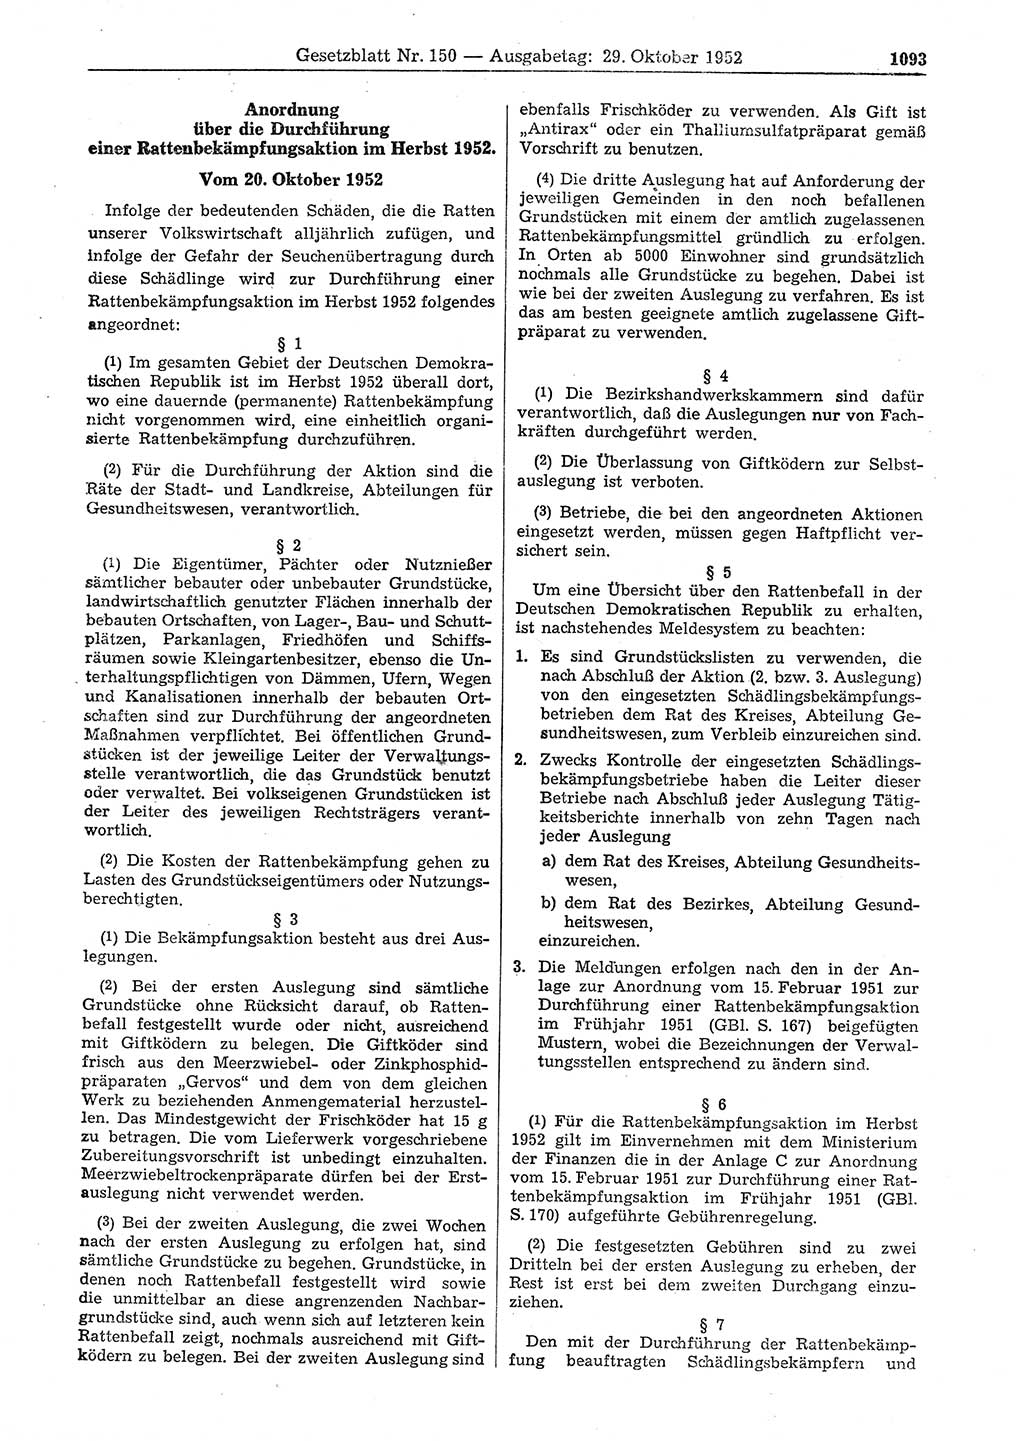 Gesetzblatt (GBl.) der Deutschen Demokratischen Republik (DDR) 1952, Seite 1093 (GBl. DDR 1952, S. 1093)